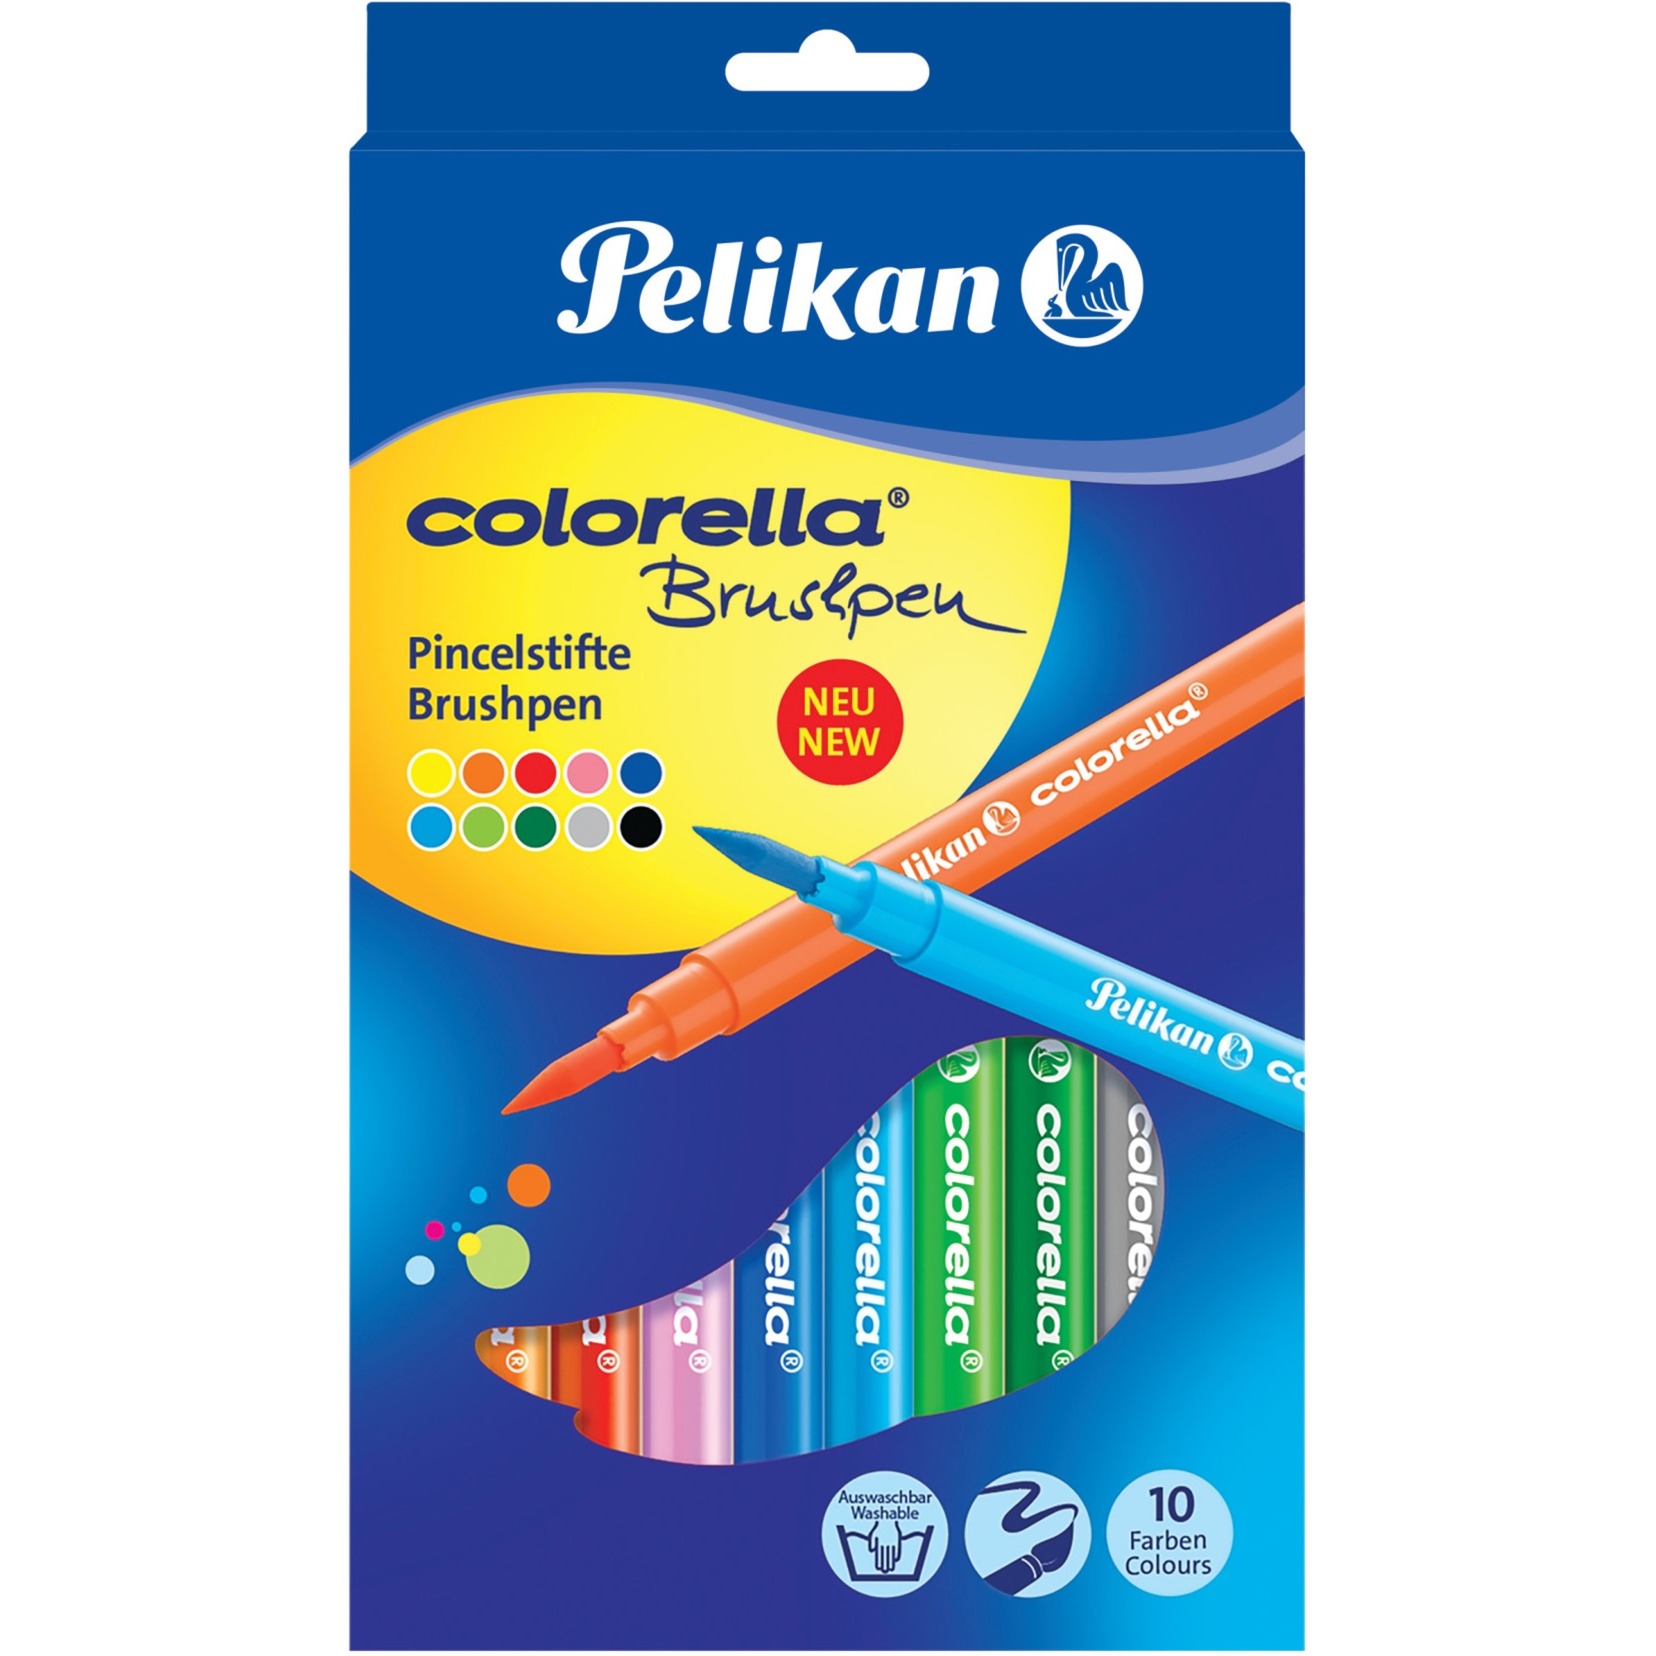 Image of Alternate - Colorella Pinselstifte online einkaufen bei Alternate